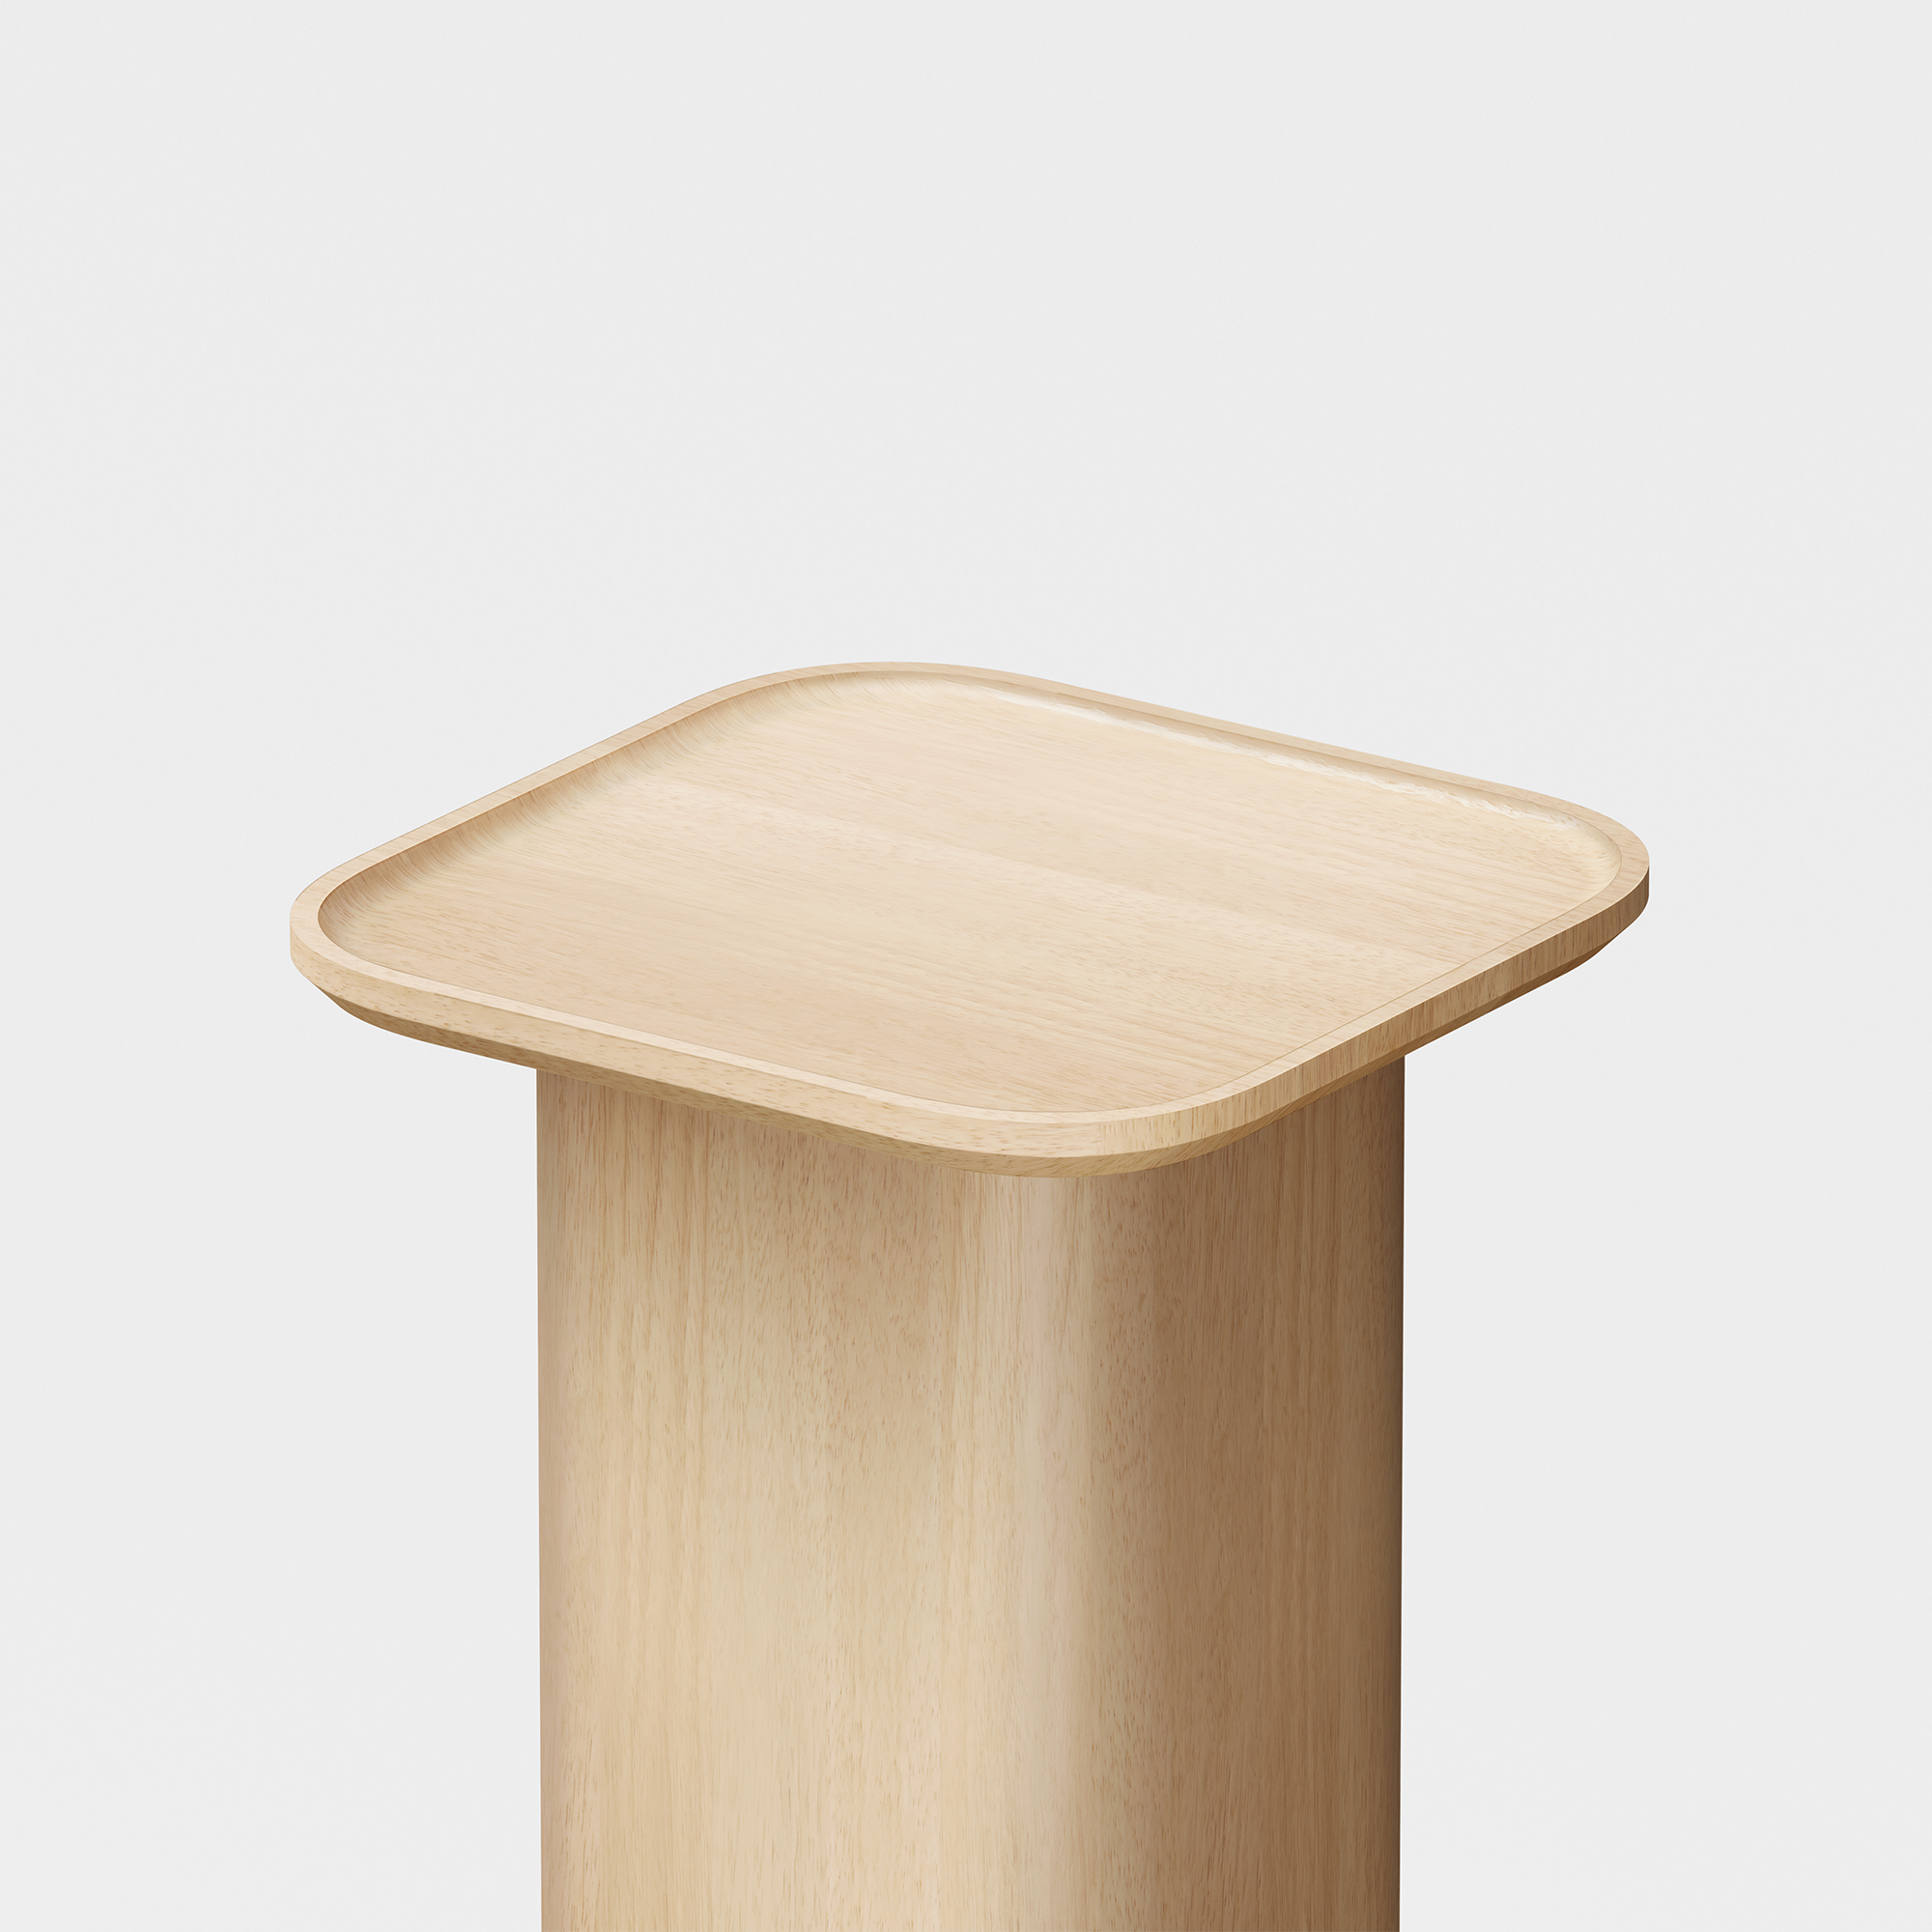 Pedestal Side Table (Natural) - Render - Top